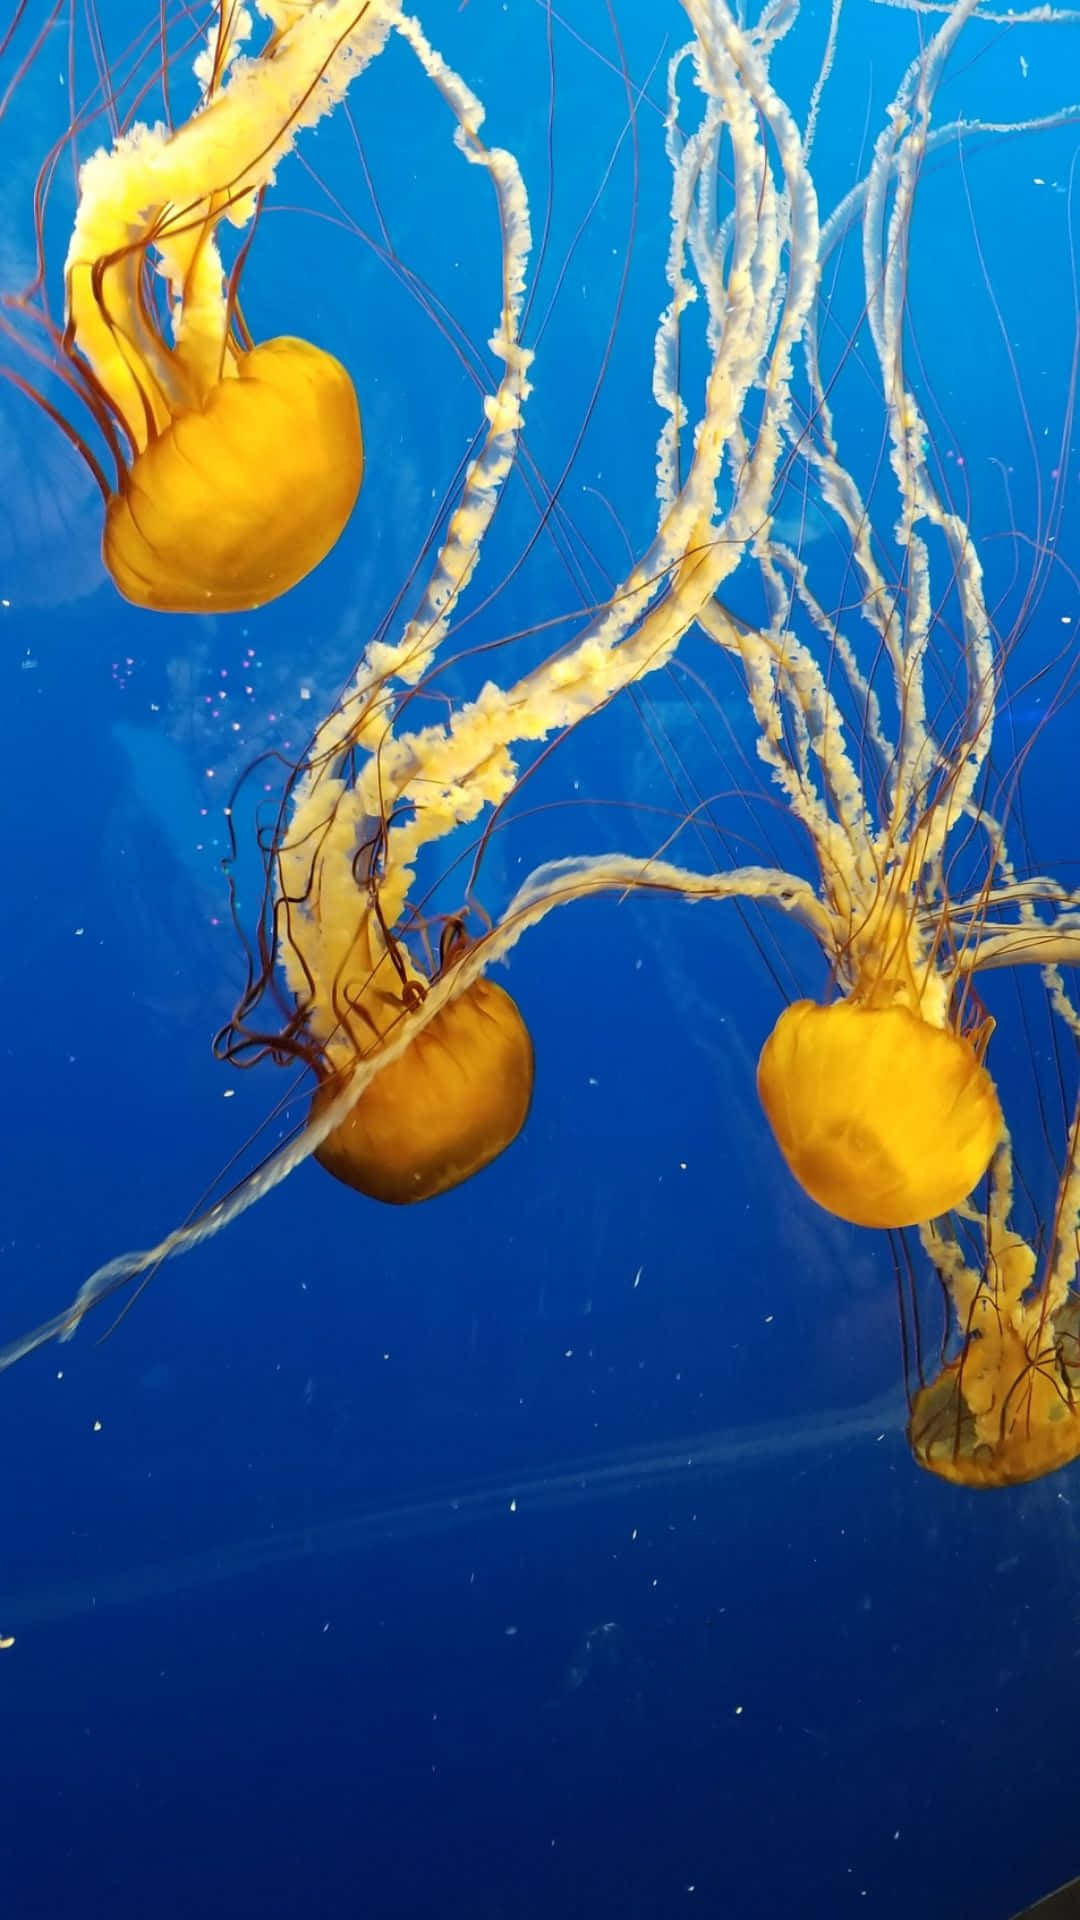 Baggrunds tapet af jellyer giver billede af gule akvamarine hoveder.